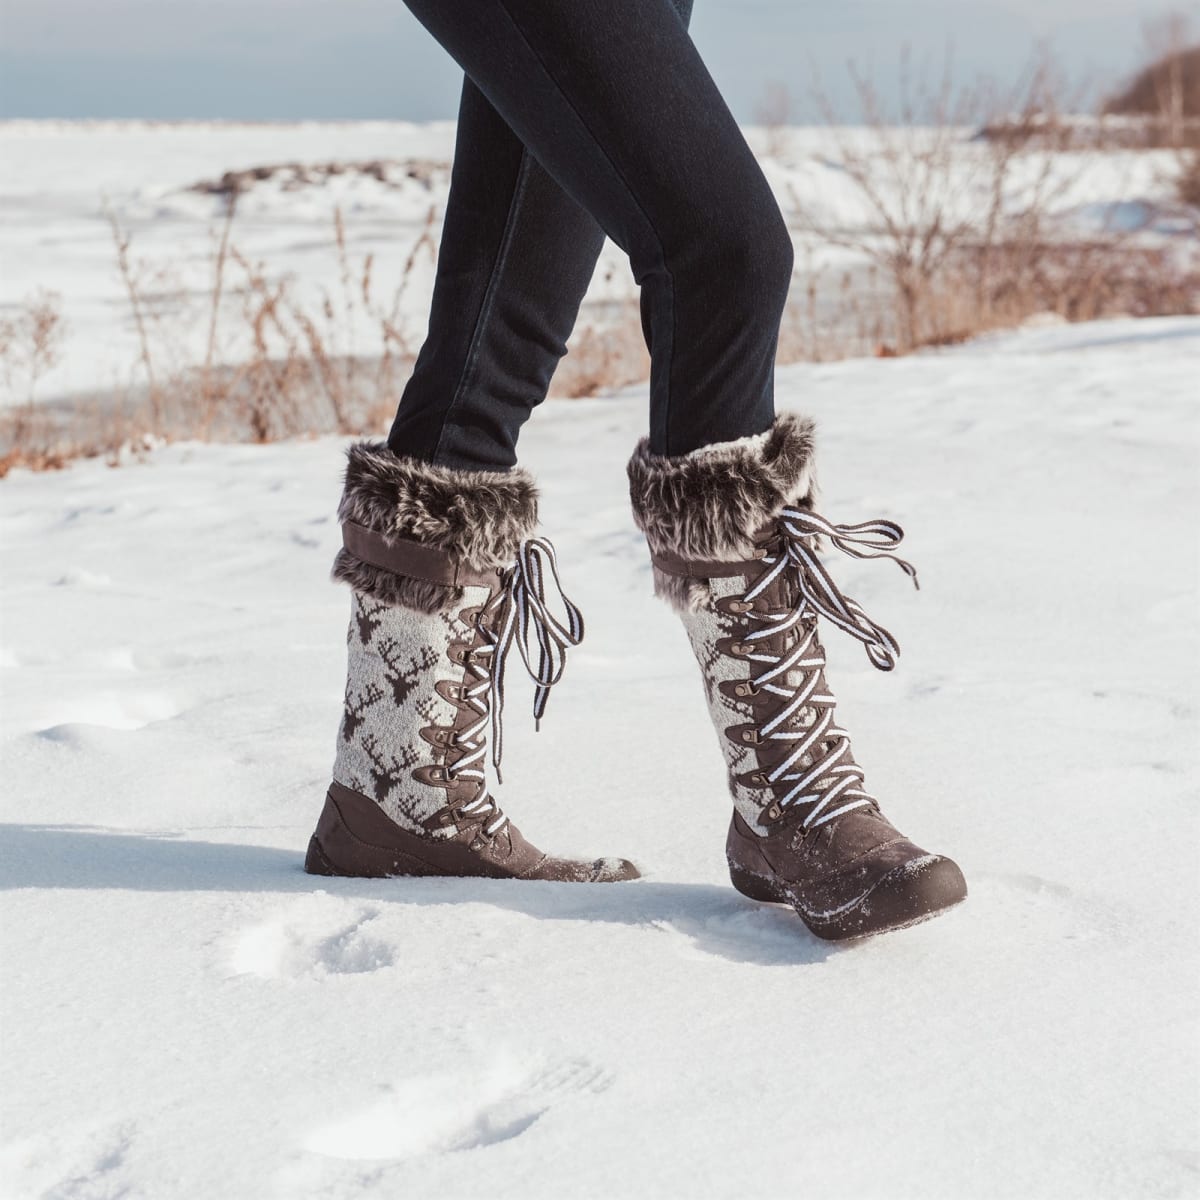 muk luks women's winter boots